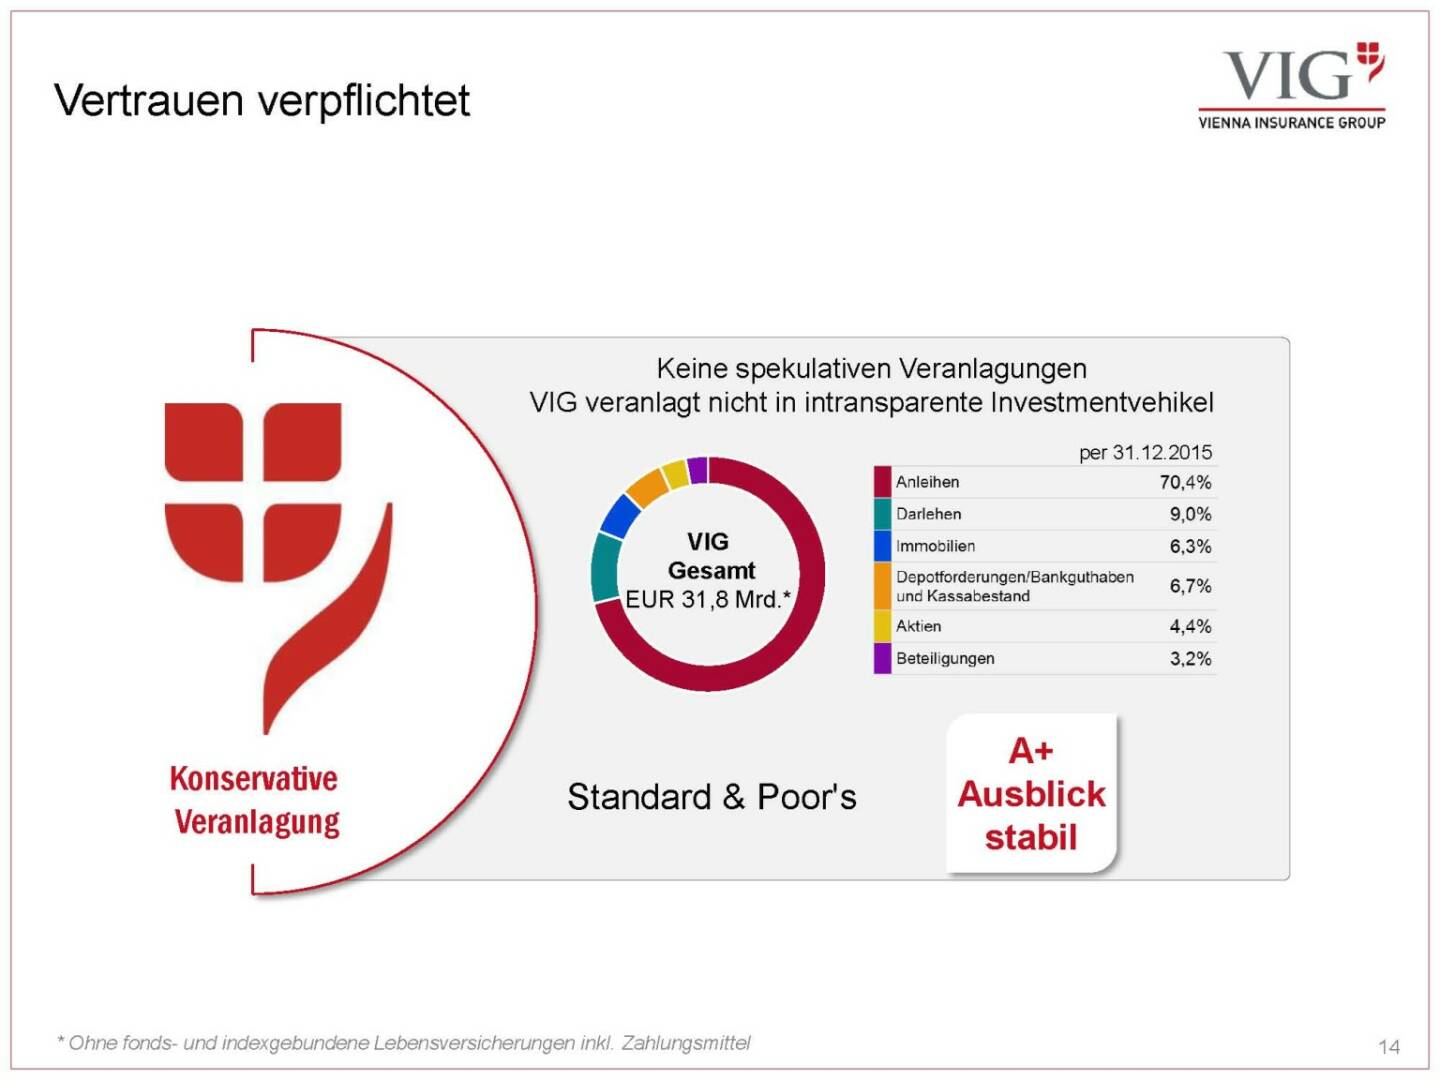 Vienna Insurance Group - Vertrauen verpflichtet